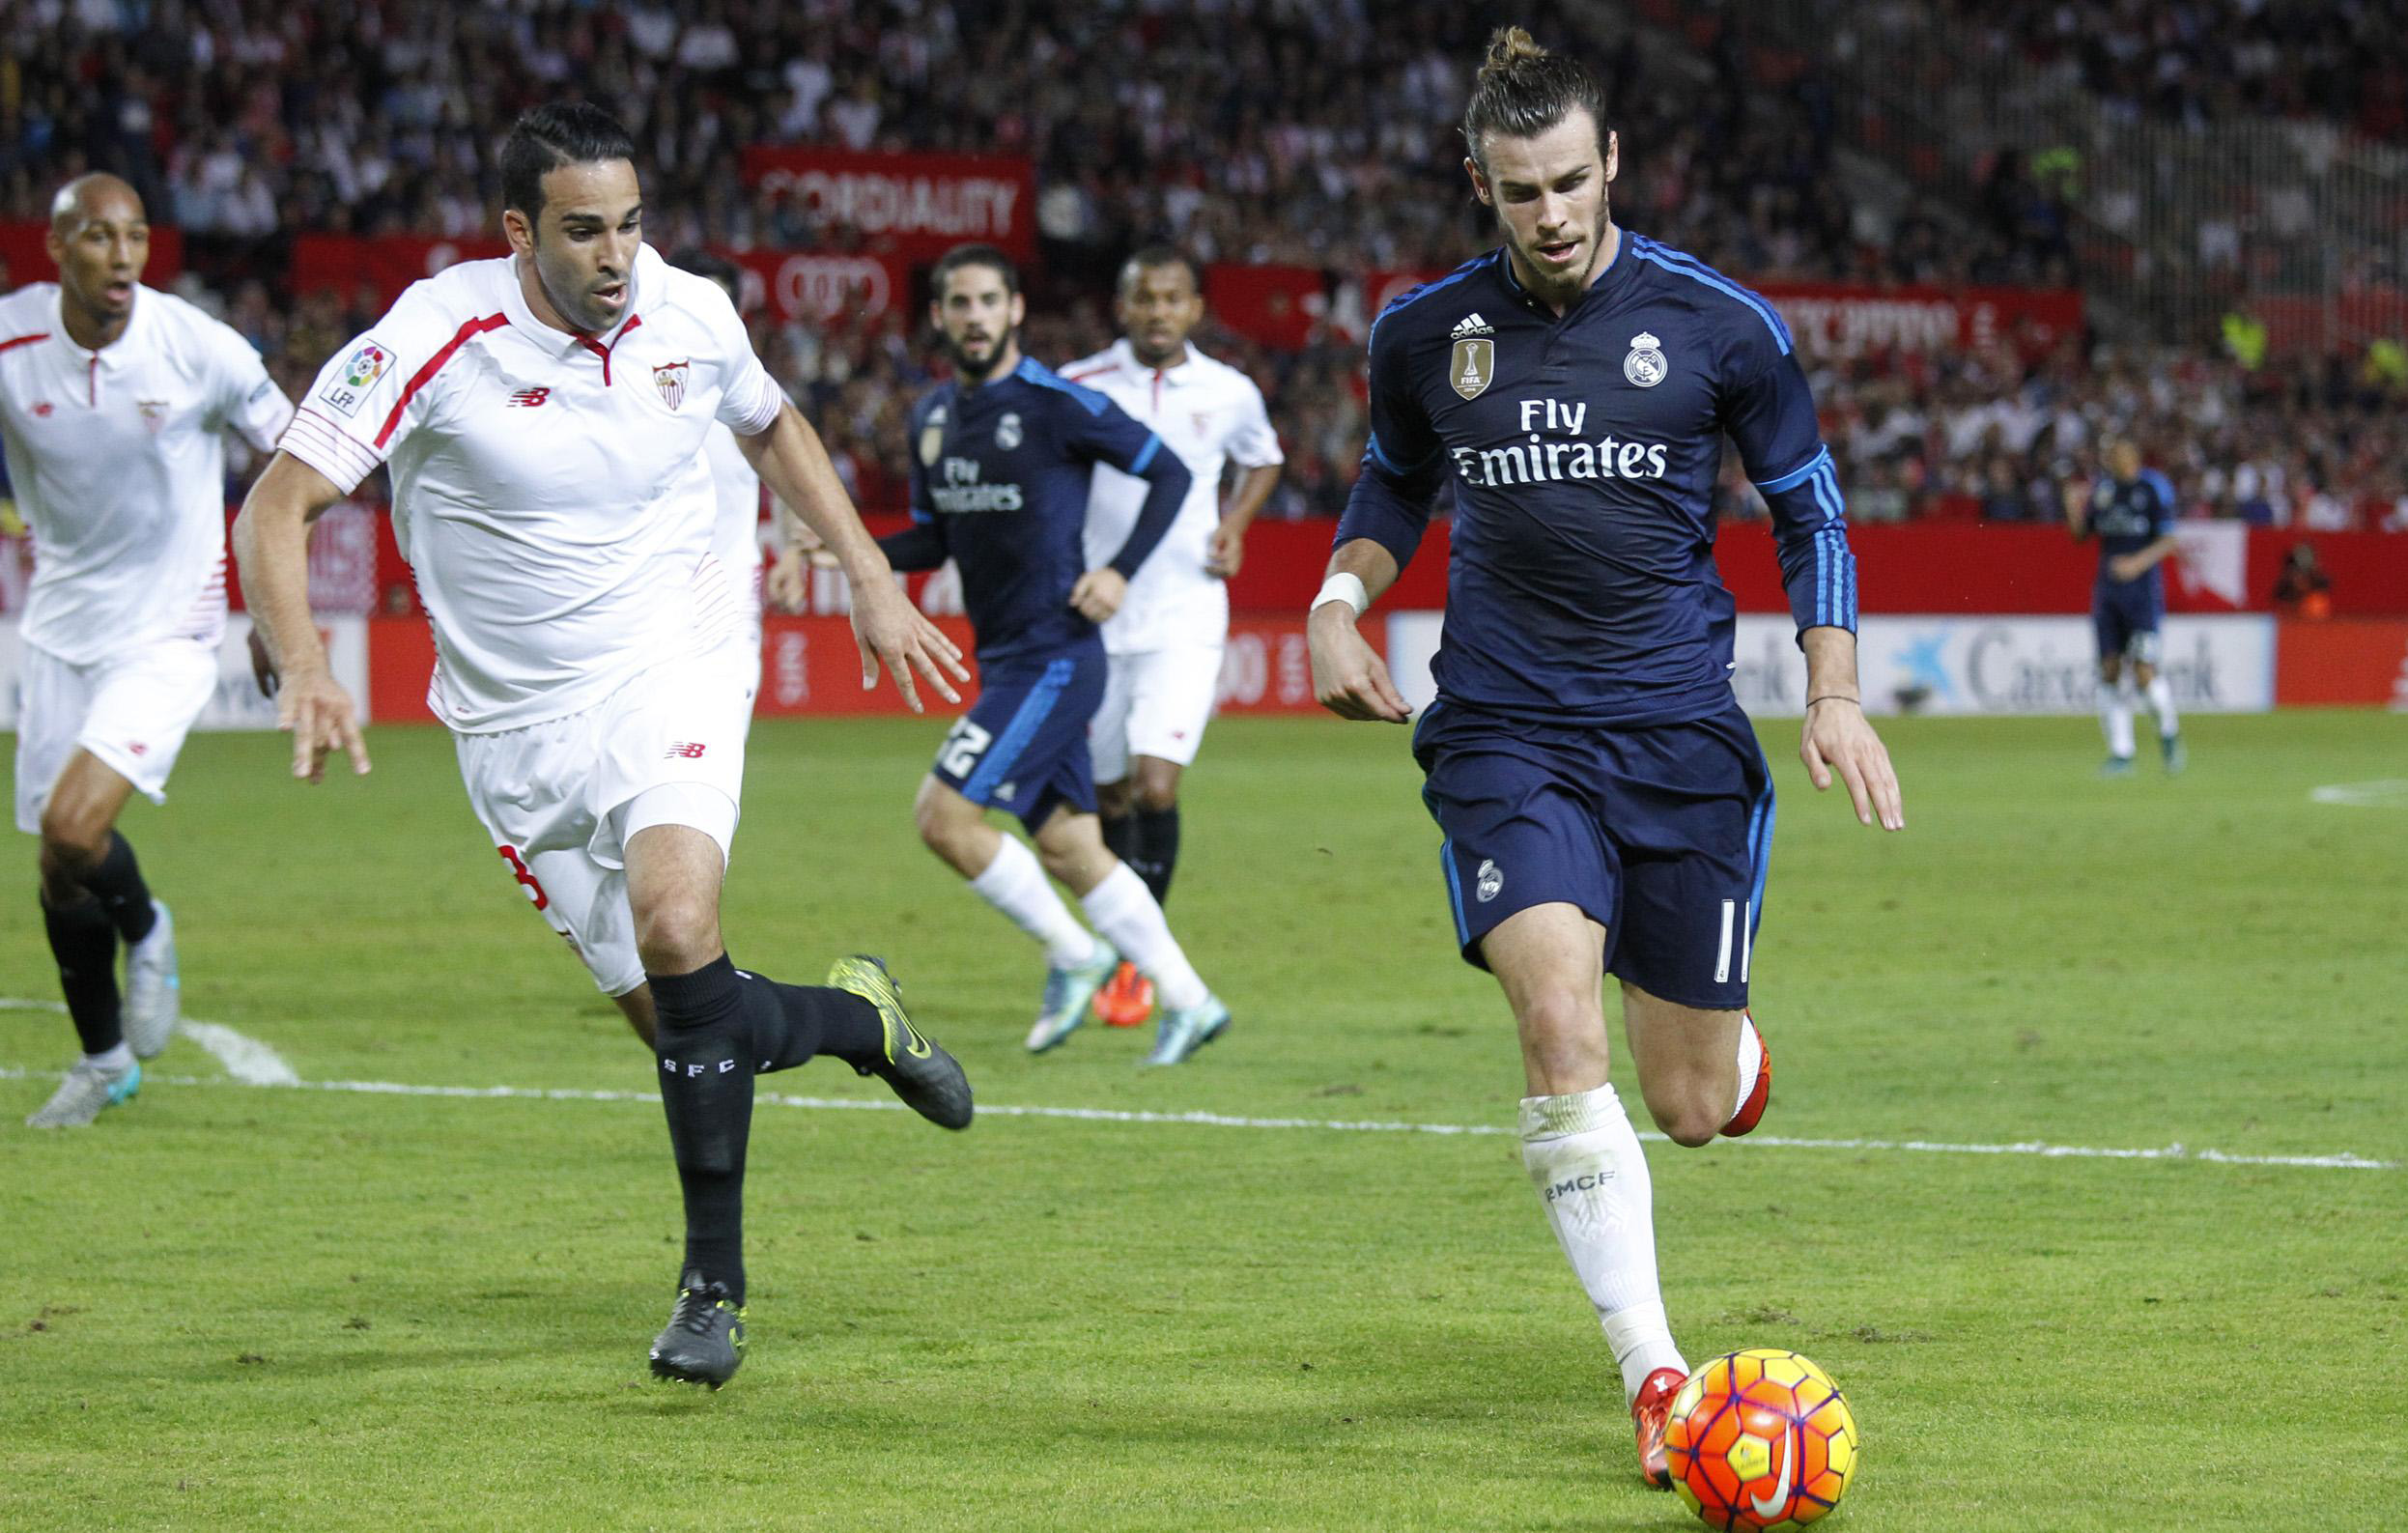 Rami del Sevilla FC y Bale del Real Madrid